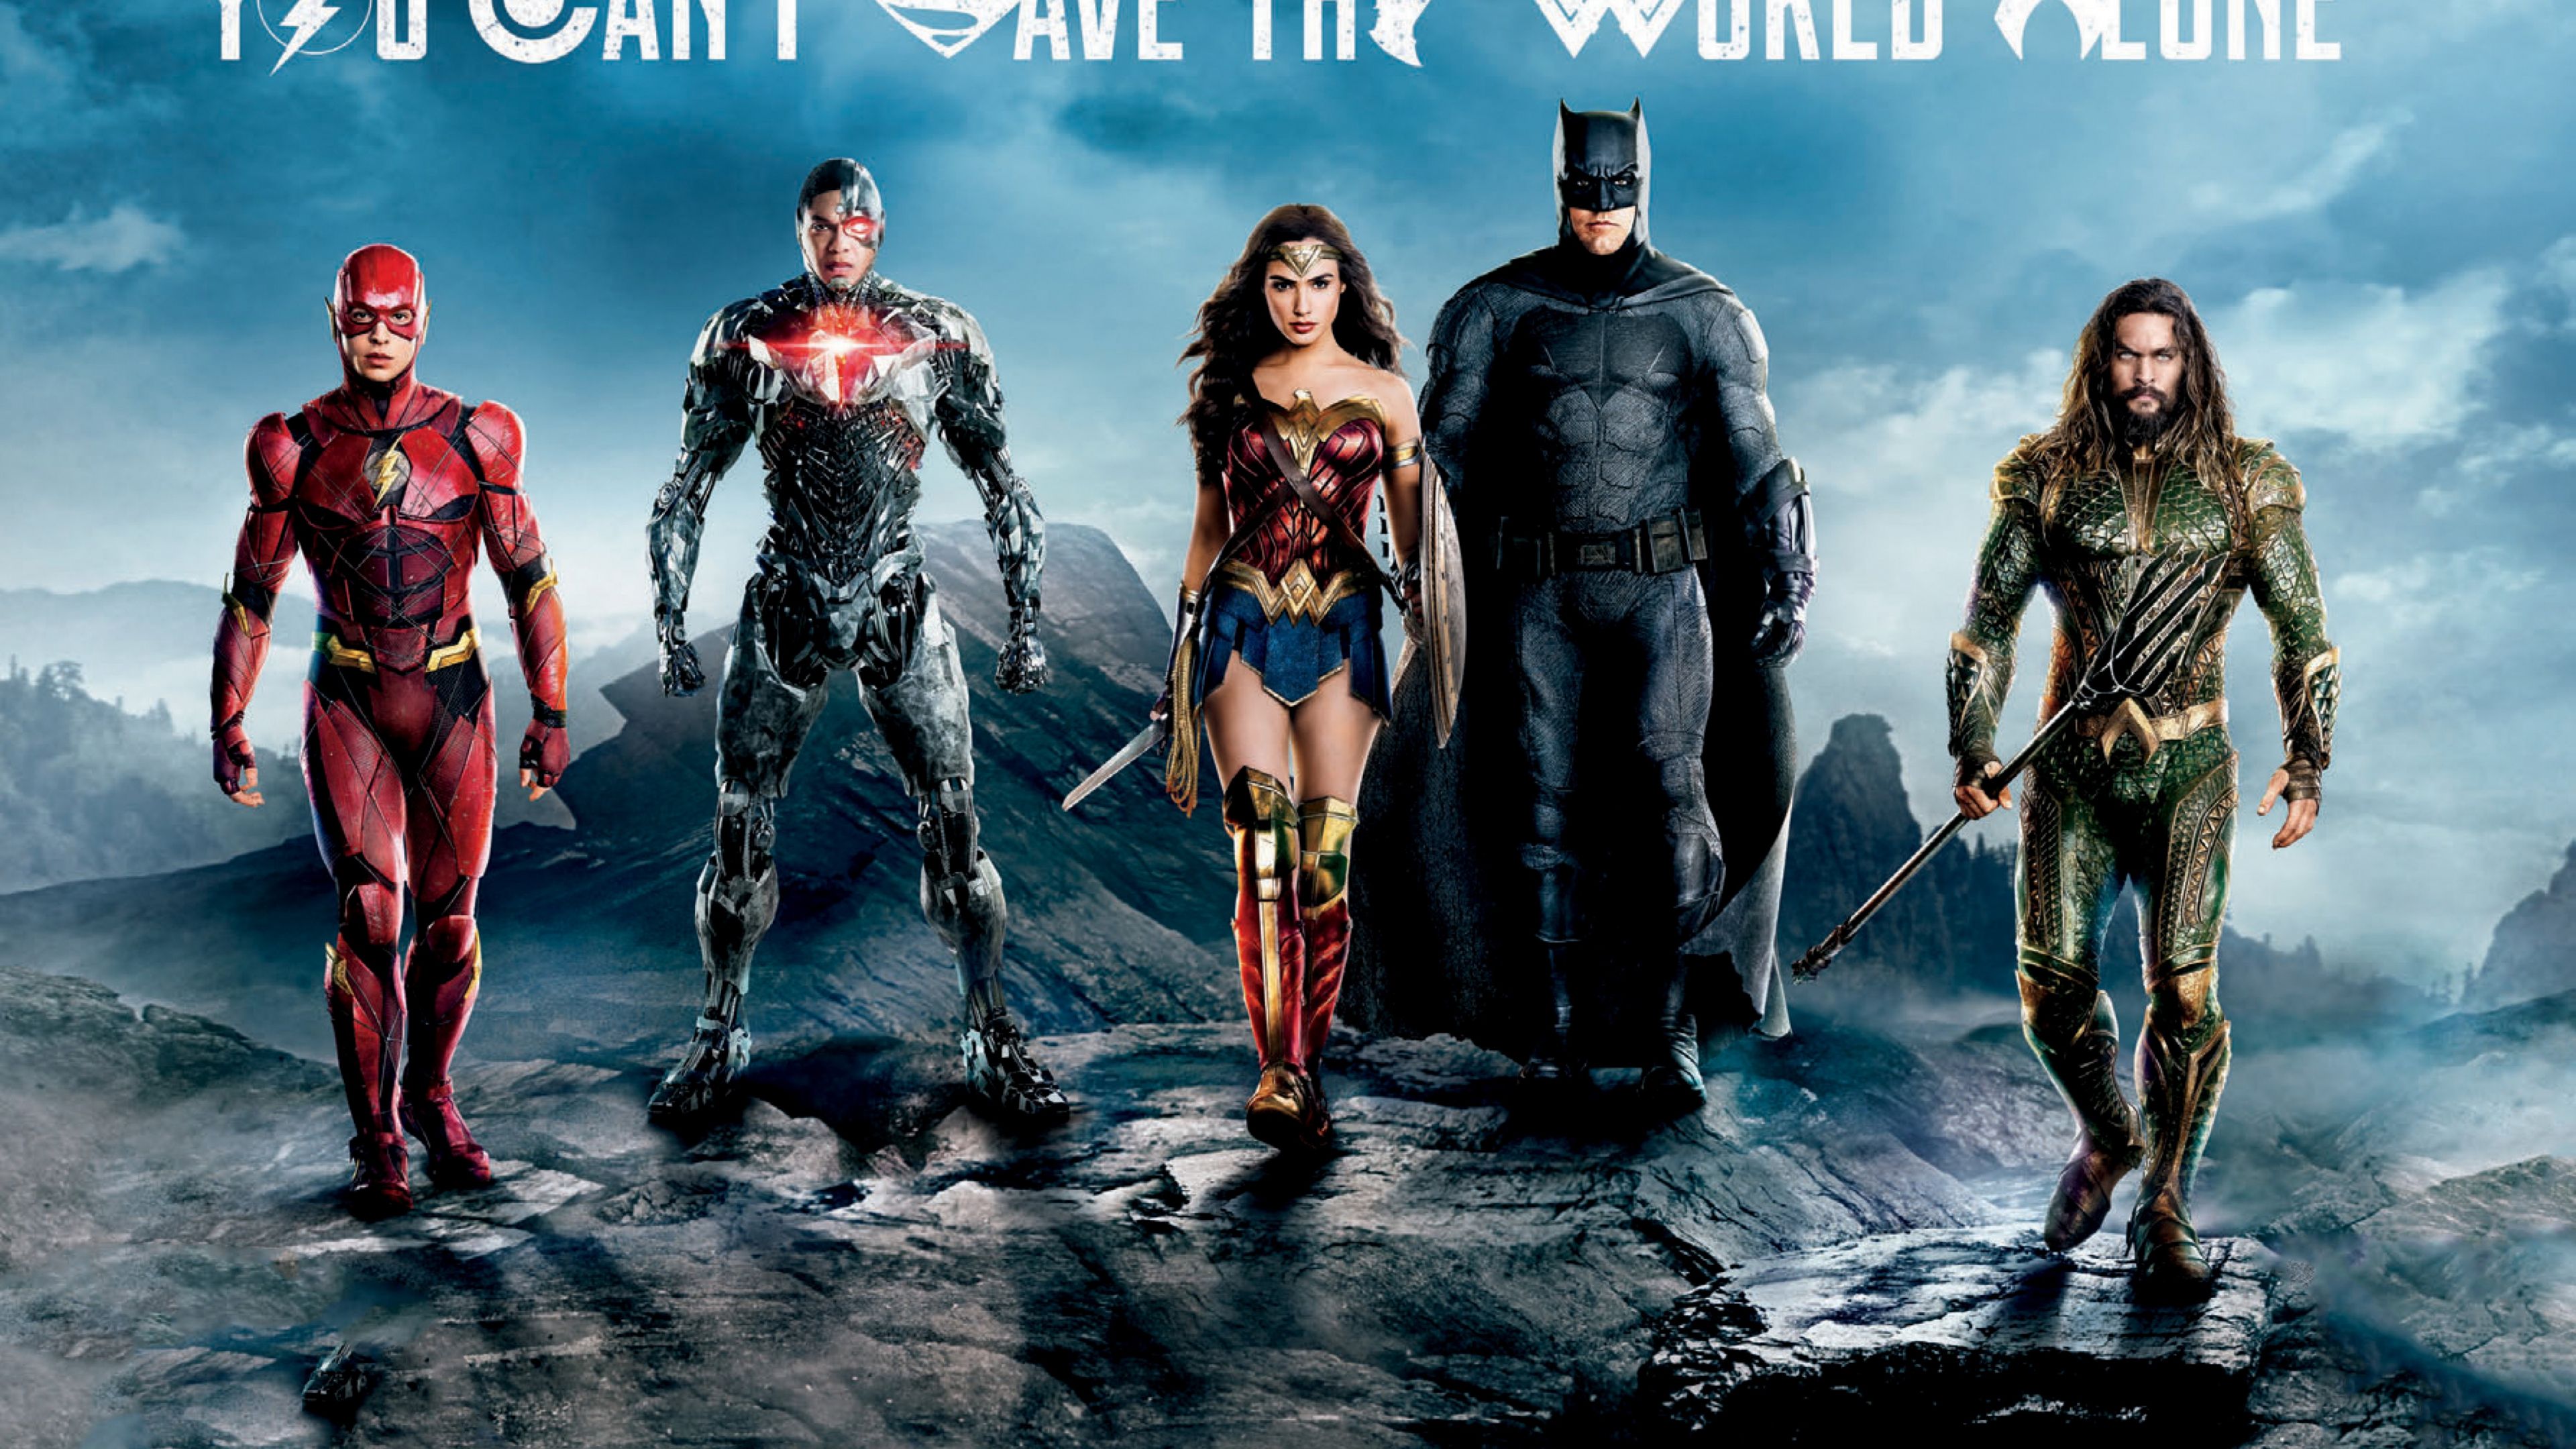 Desktop Wallpaper Justice League, The Flash, Cyborg, Wonder Woman, Batman, Aquaman, Movie, 4k, HD Image, Picture, Background, E82d26